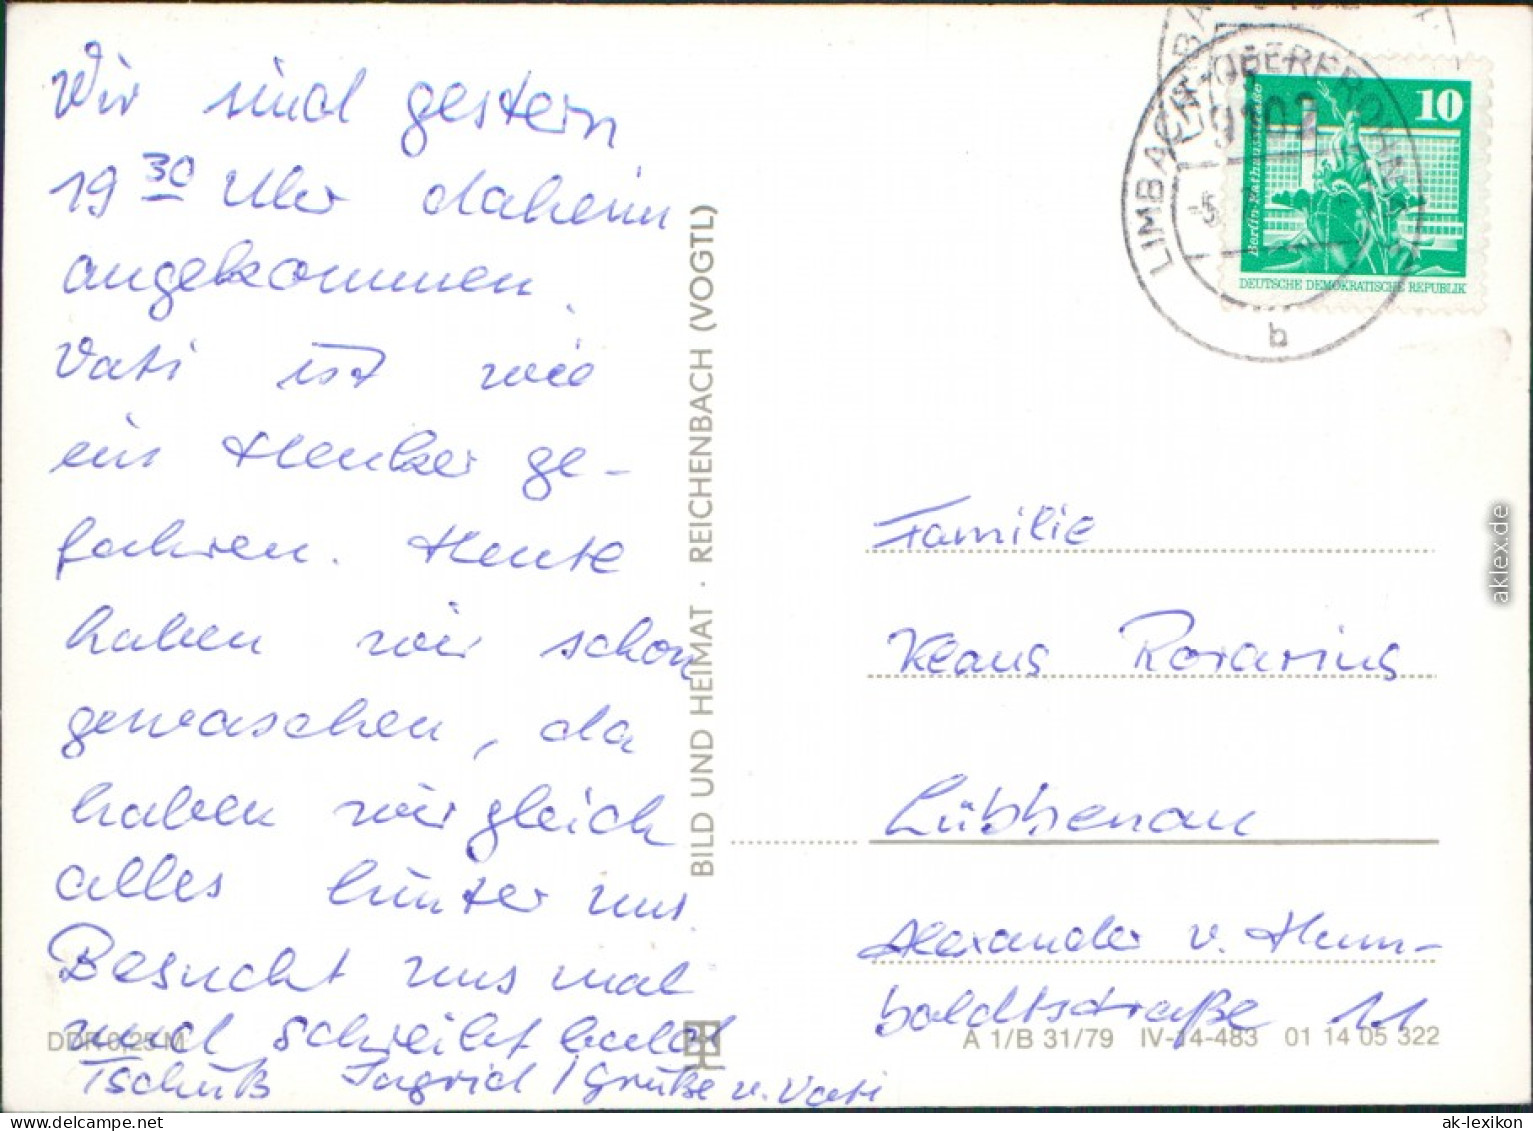 Limbach-Oberfrohna OdF-Ehrenmal, Stadtpark Goetheschule 1980 - Limbach-Oberfrohna